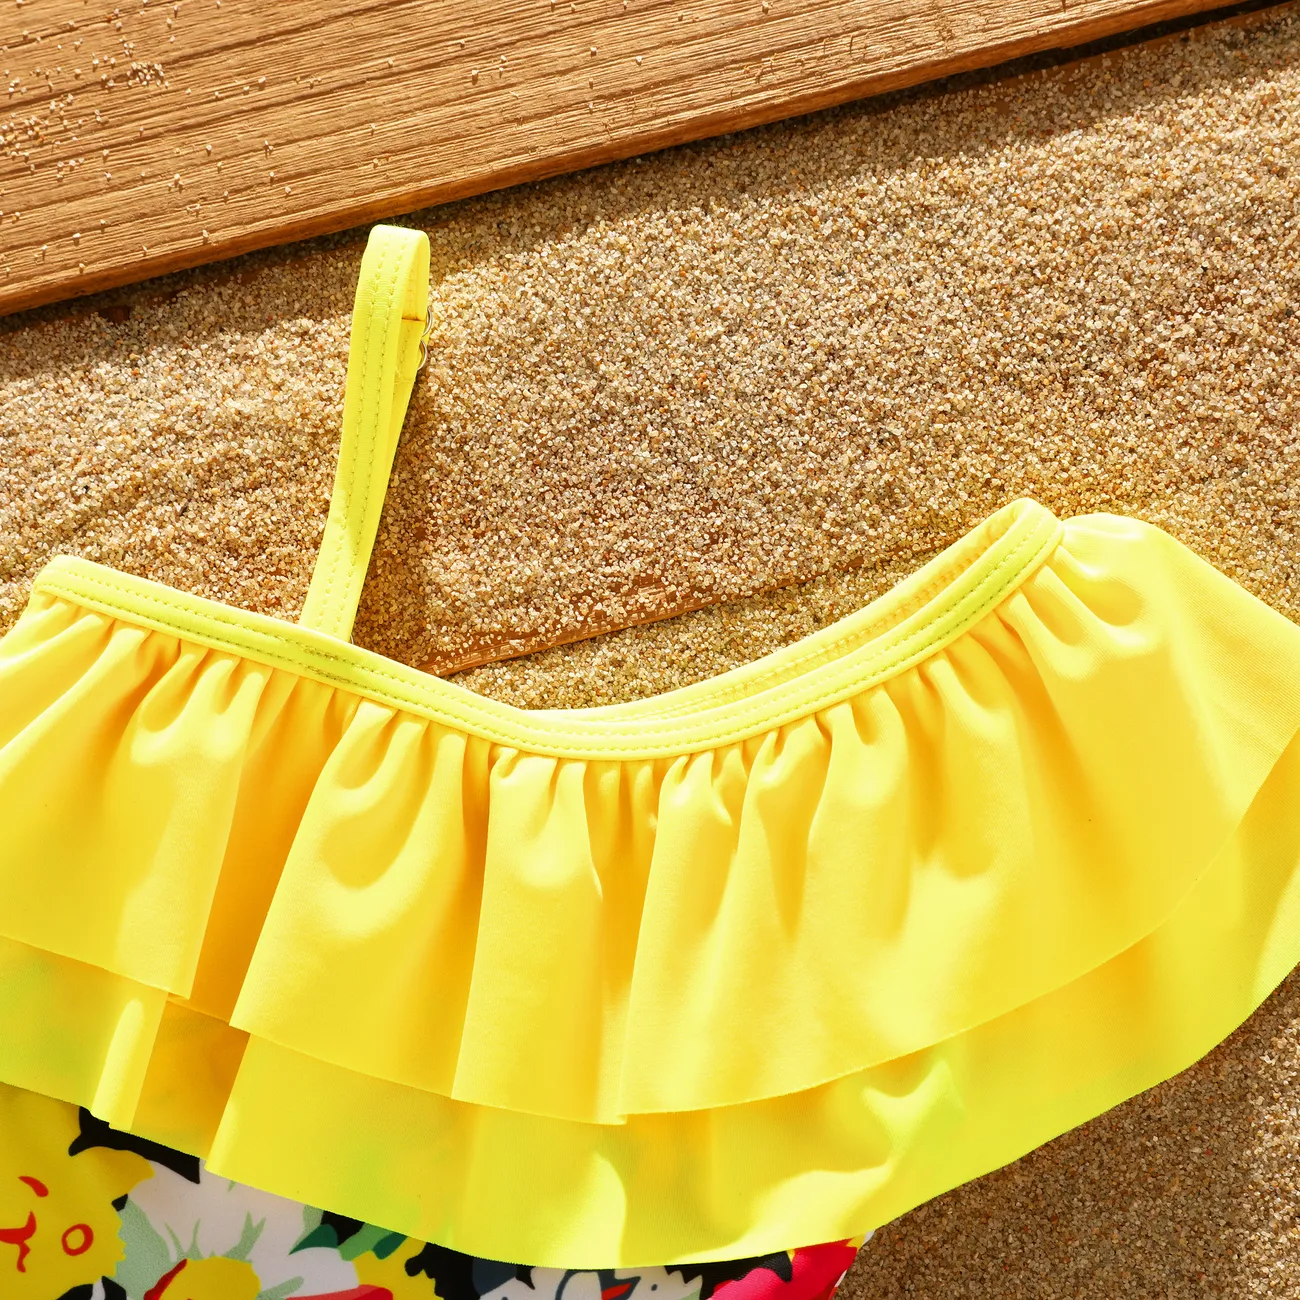 Baby Girl Sweet Tropical Ruffle Swimsuit   Yellow big image 1